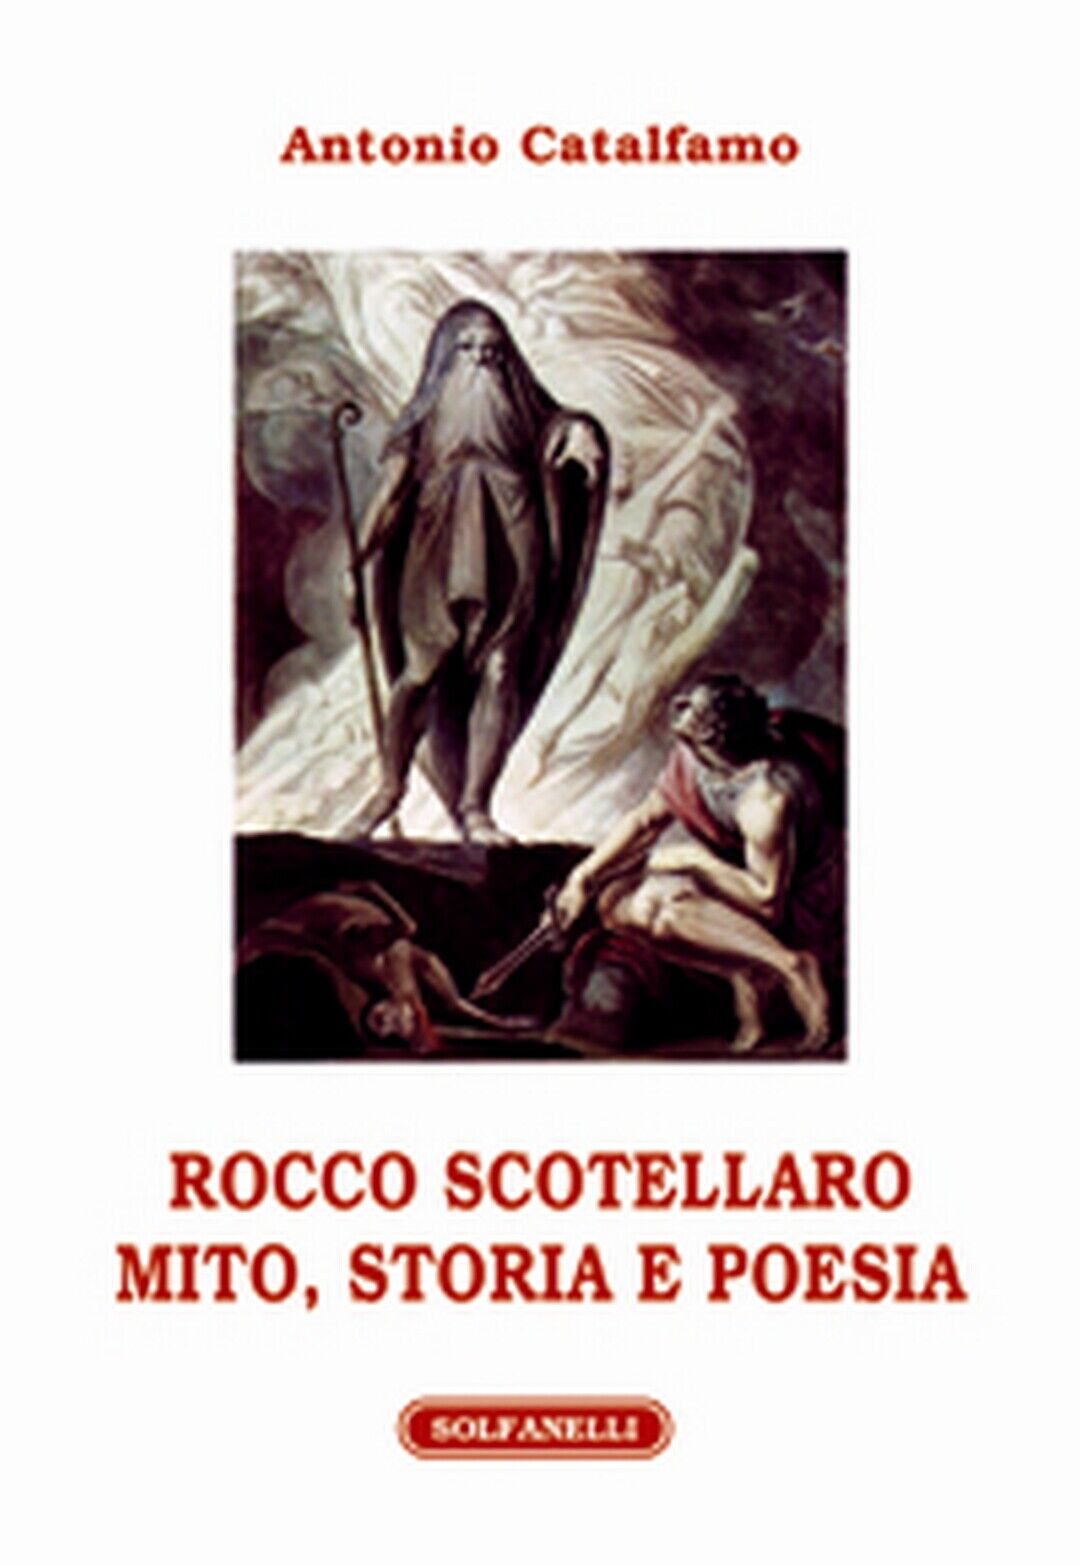 ROCCO SCOTELLARO MITO, STORIA E POESIA, Antonio Catalfamo,  Solfanelli Edizioni